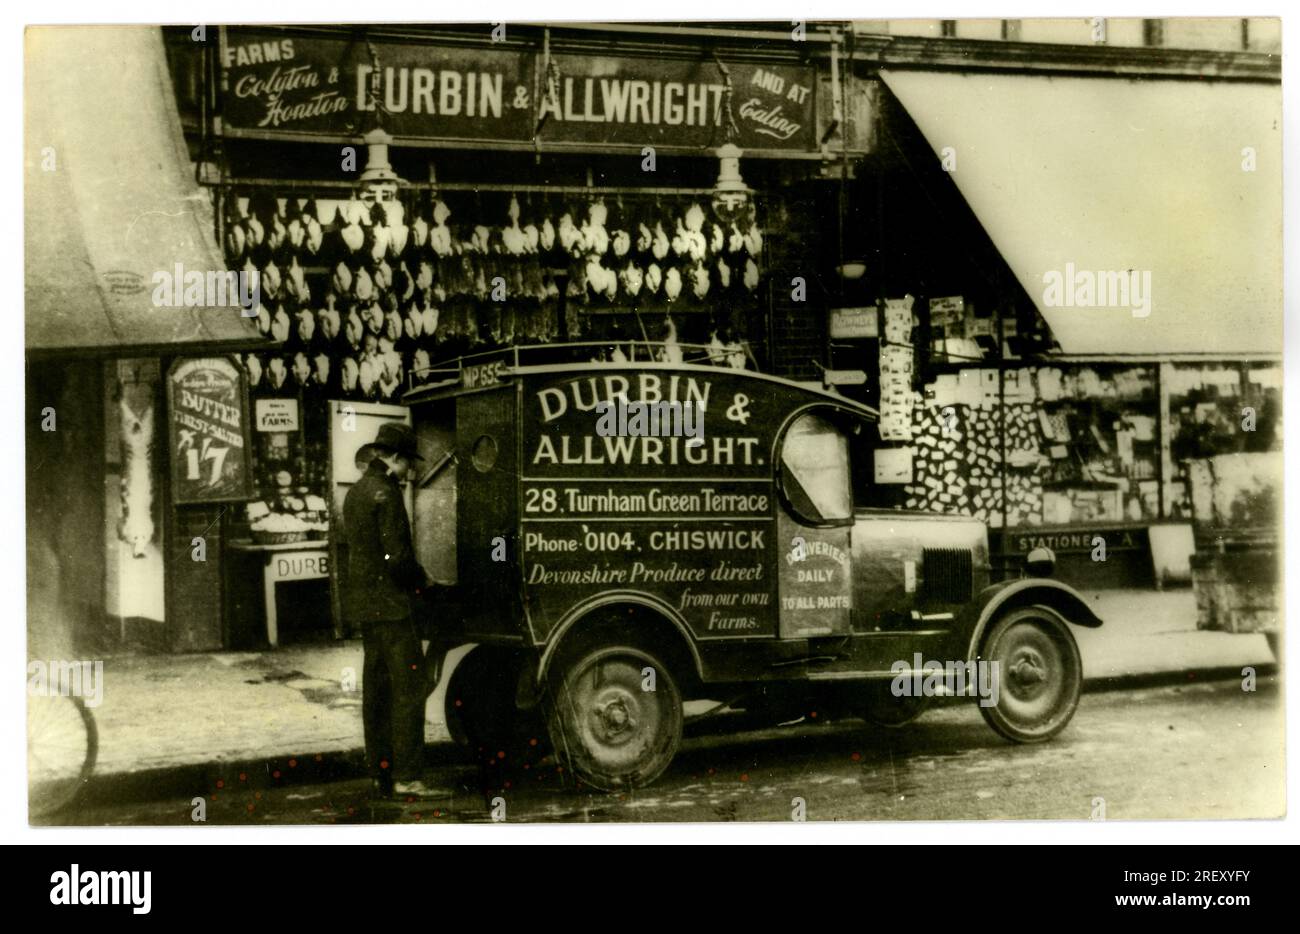 Foto von Durbin & Allwrights Lieferwagen und Fahrer vor dem Laden, der frische Produkte direkt von seinen Devonshire Farmen in Honiton und Colyton verkauft. In diesem Laden werden Hühner, Kaninchen und Butter ausgestellt. Dieser Laden war in Turnham Green Terrace, Chiswick, London, Großbritannien Es gab noch einen Laden in Ealing, London. Ungefähr 1930. Stockfoto